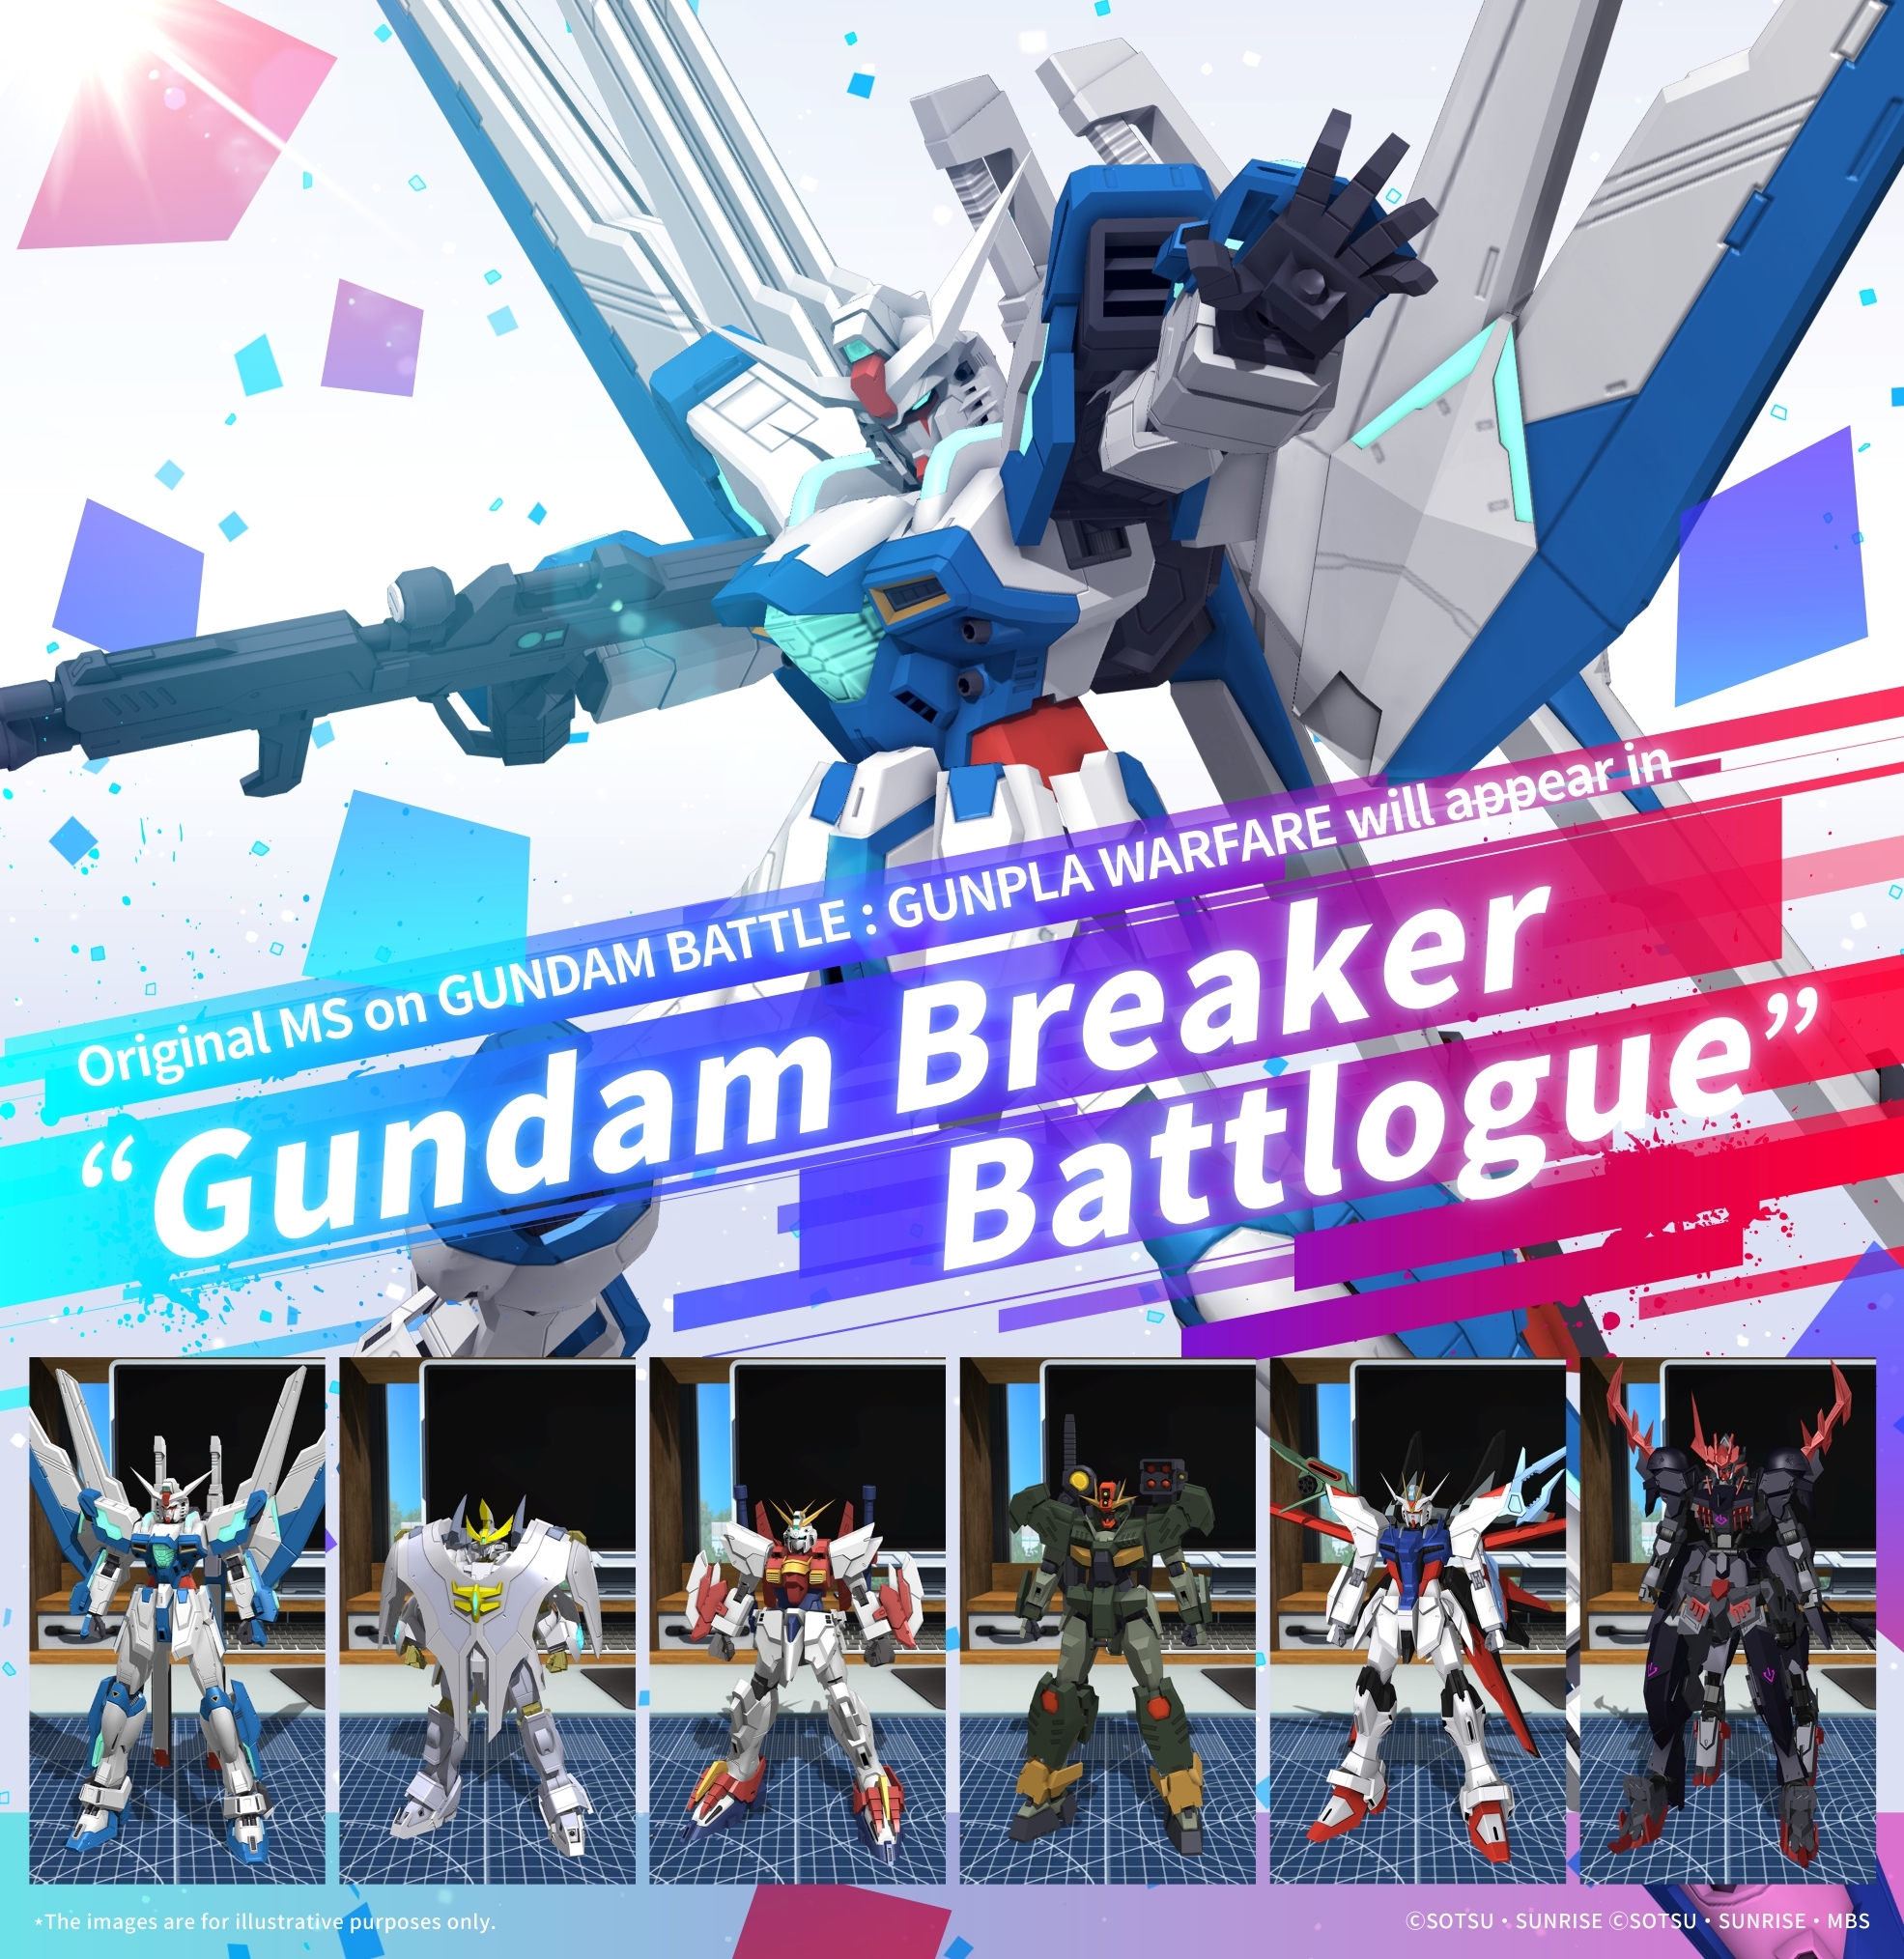 PRODUCT  Gundam Breaker Battlogue